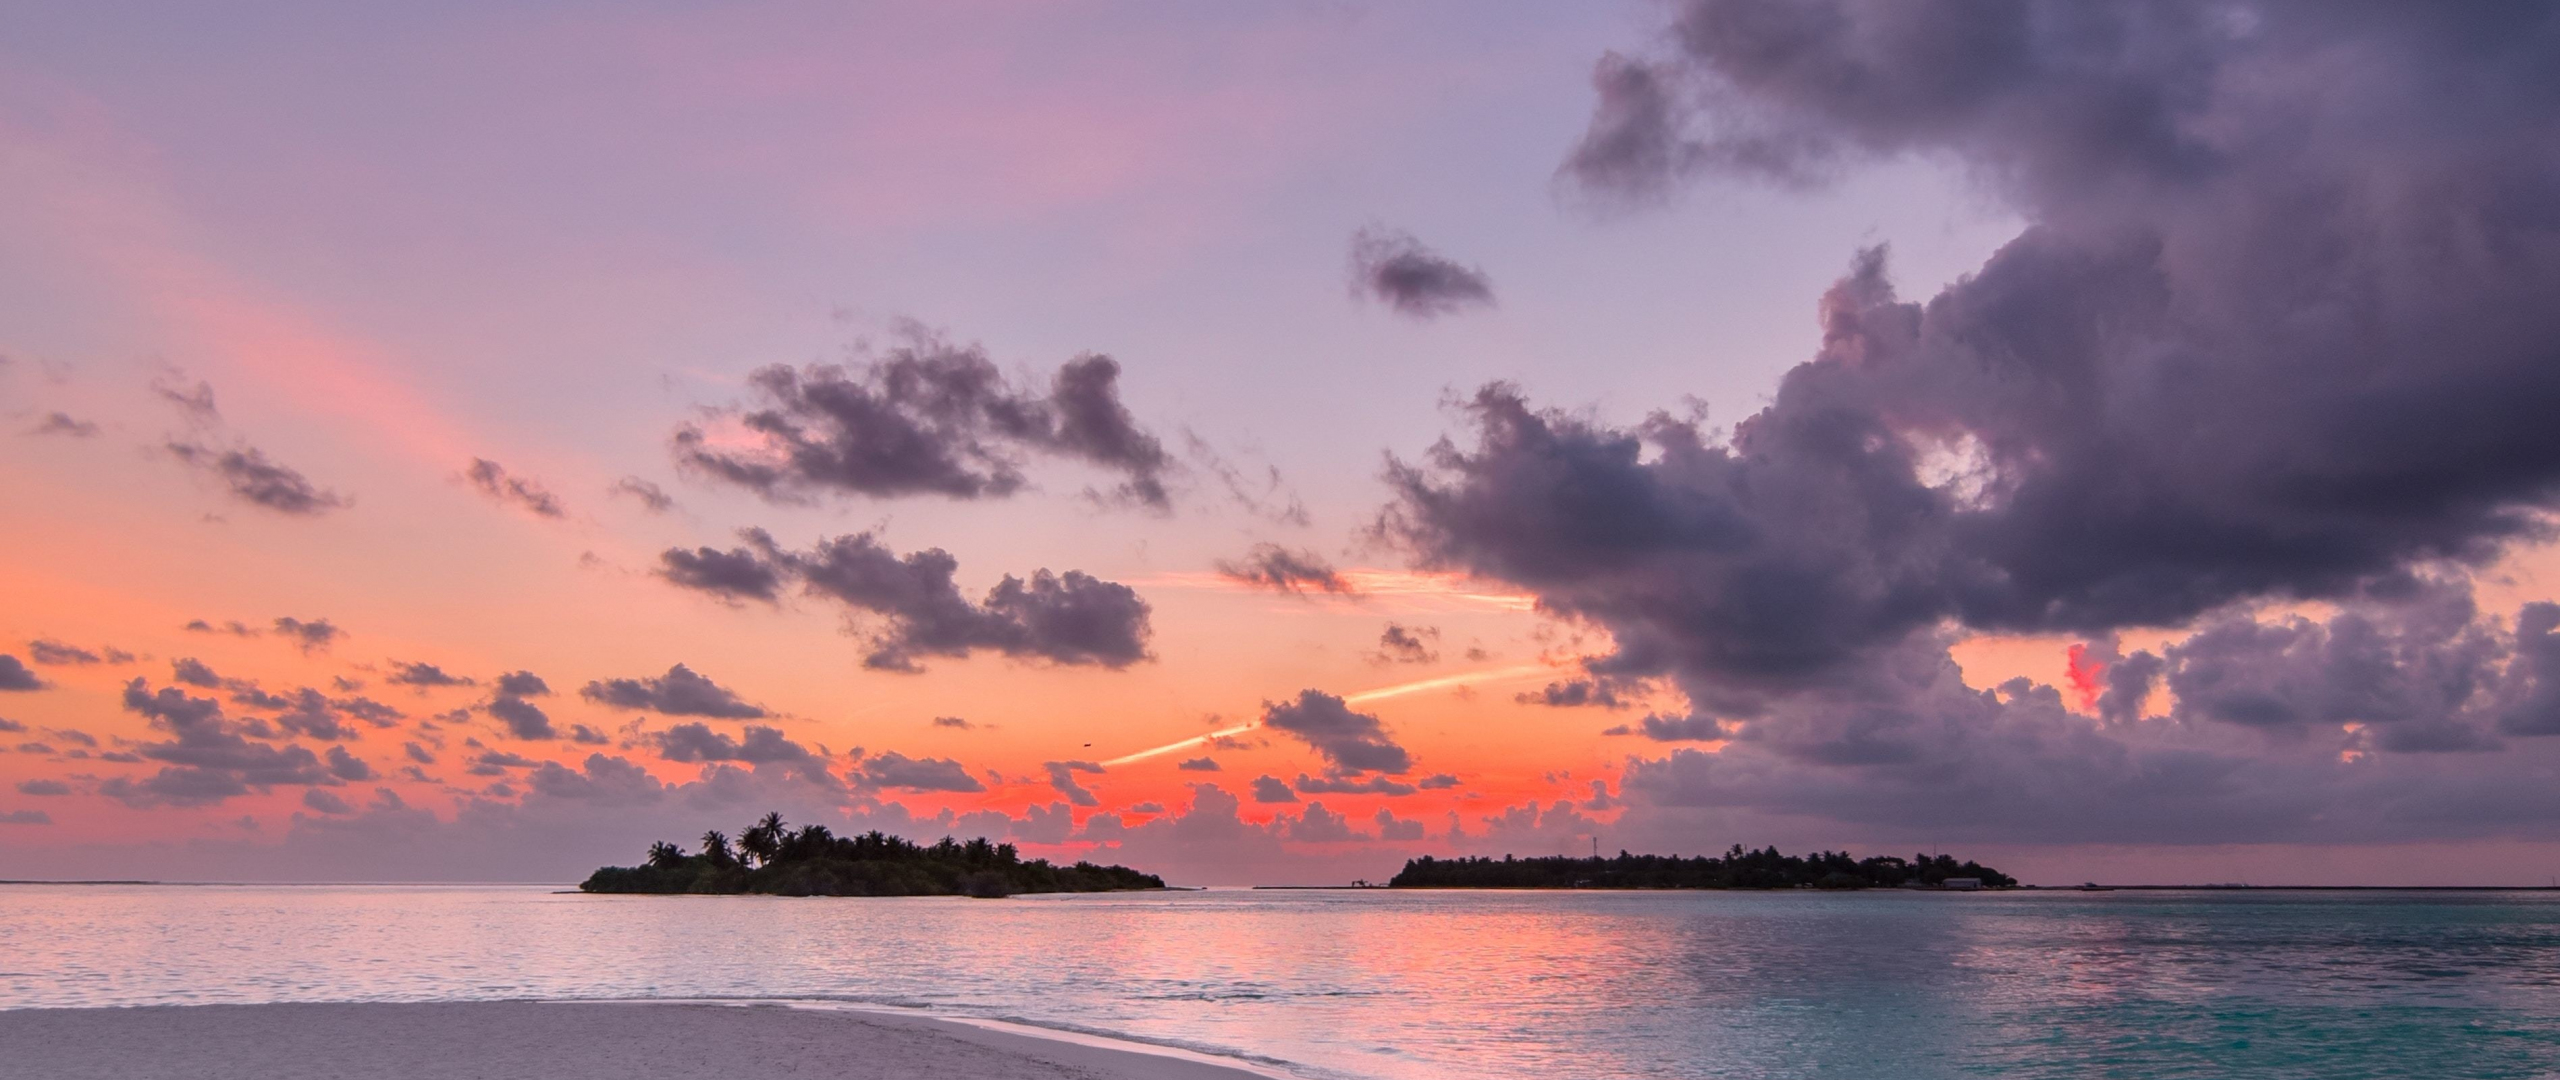 Download 2560x1080 Wallpaper Beach Island Sunset Clouds Nature